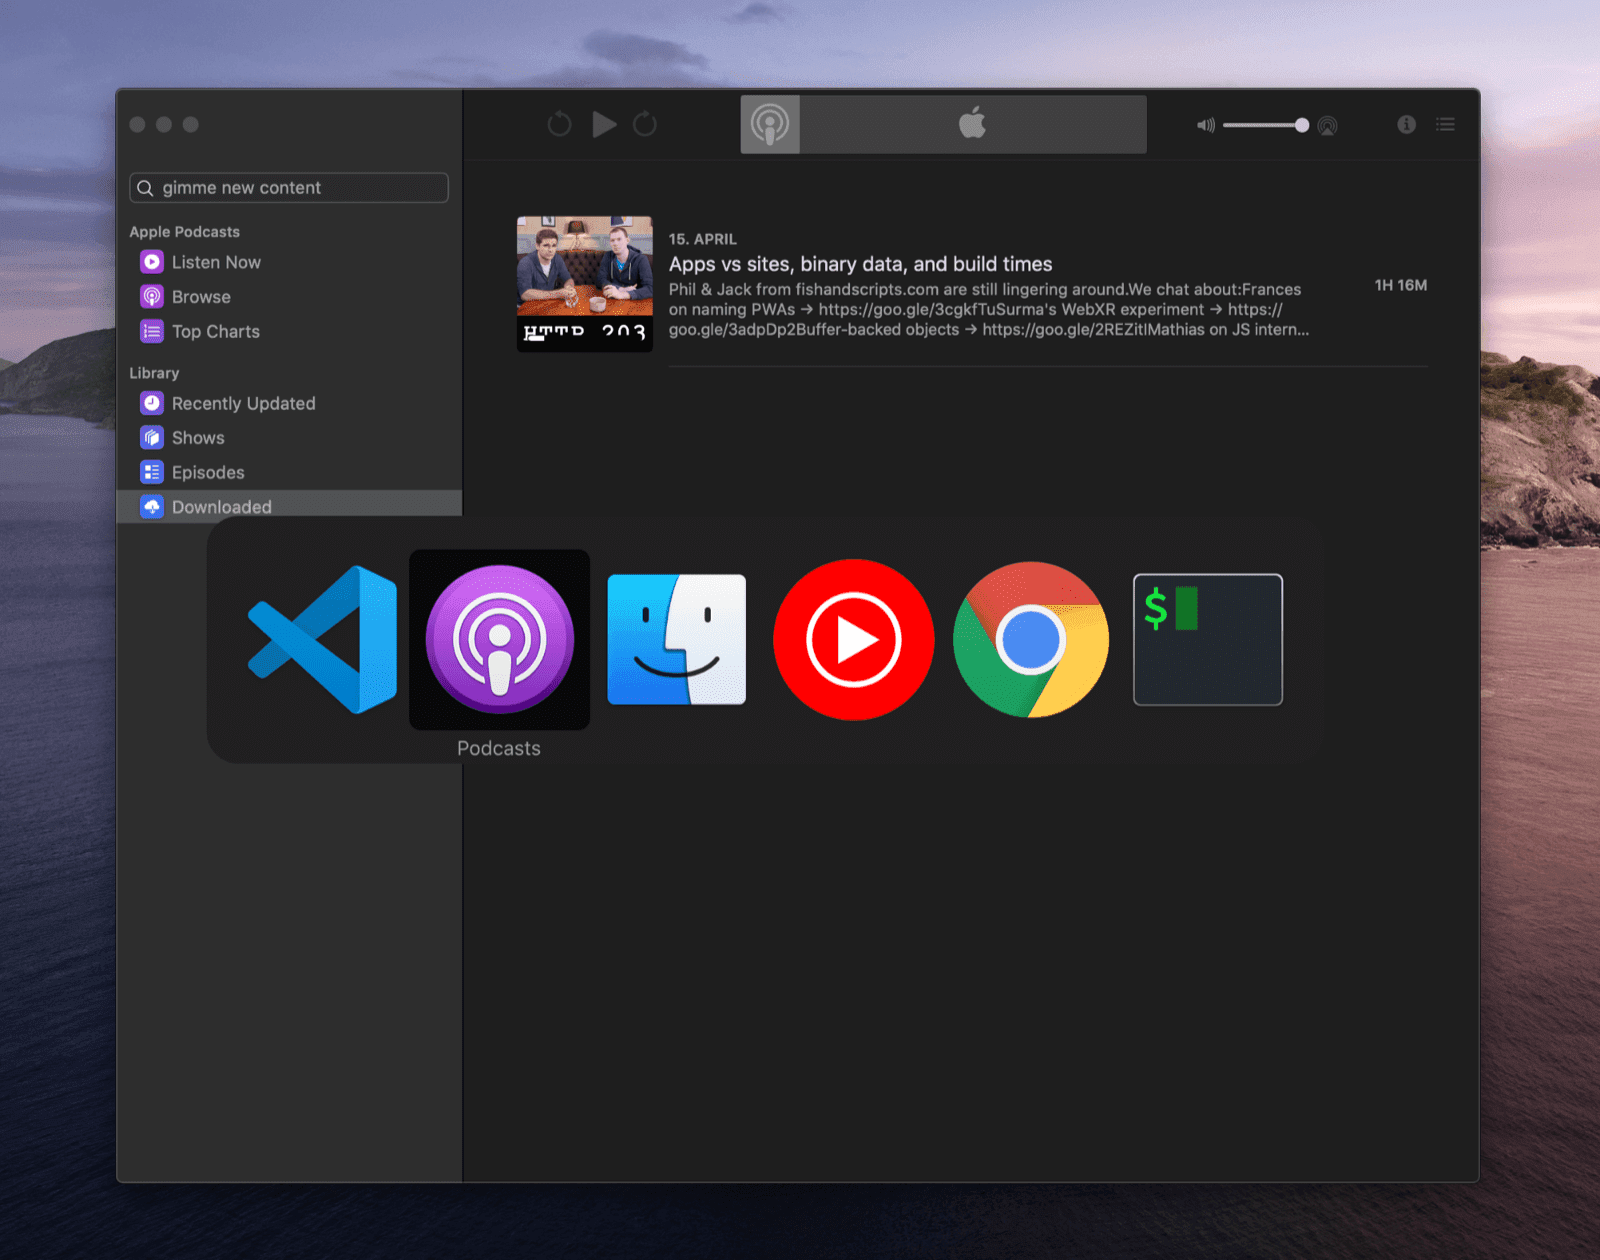 Biri Podcasts uygulaması olmak üzere aralarından seçim yapabileceğiniz çeşitli uygulama simgeleri içeren macOS görev değiştirici.